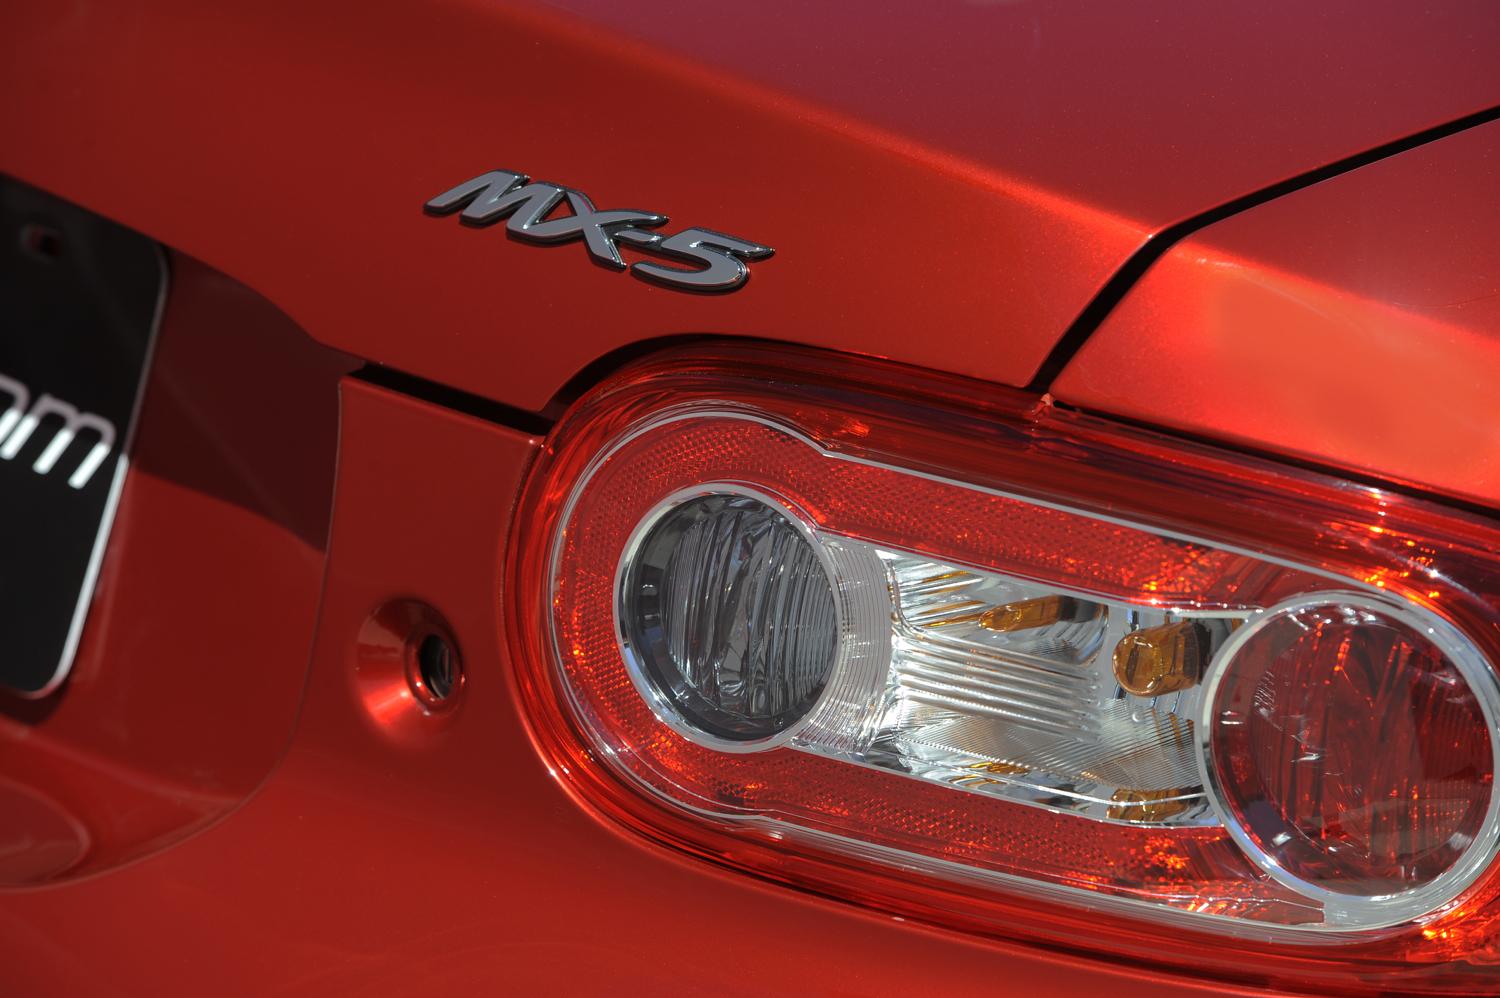 2015 Mazda MX-5 Miata 25th Anniversary Edition